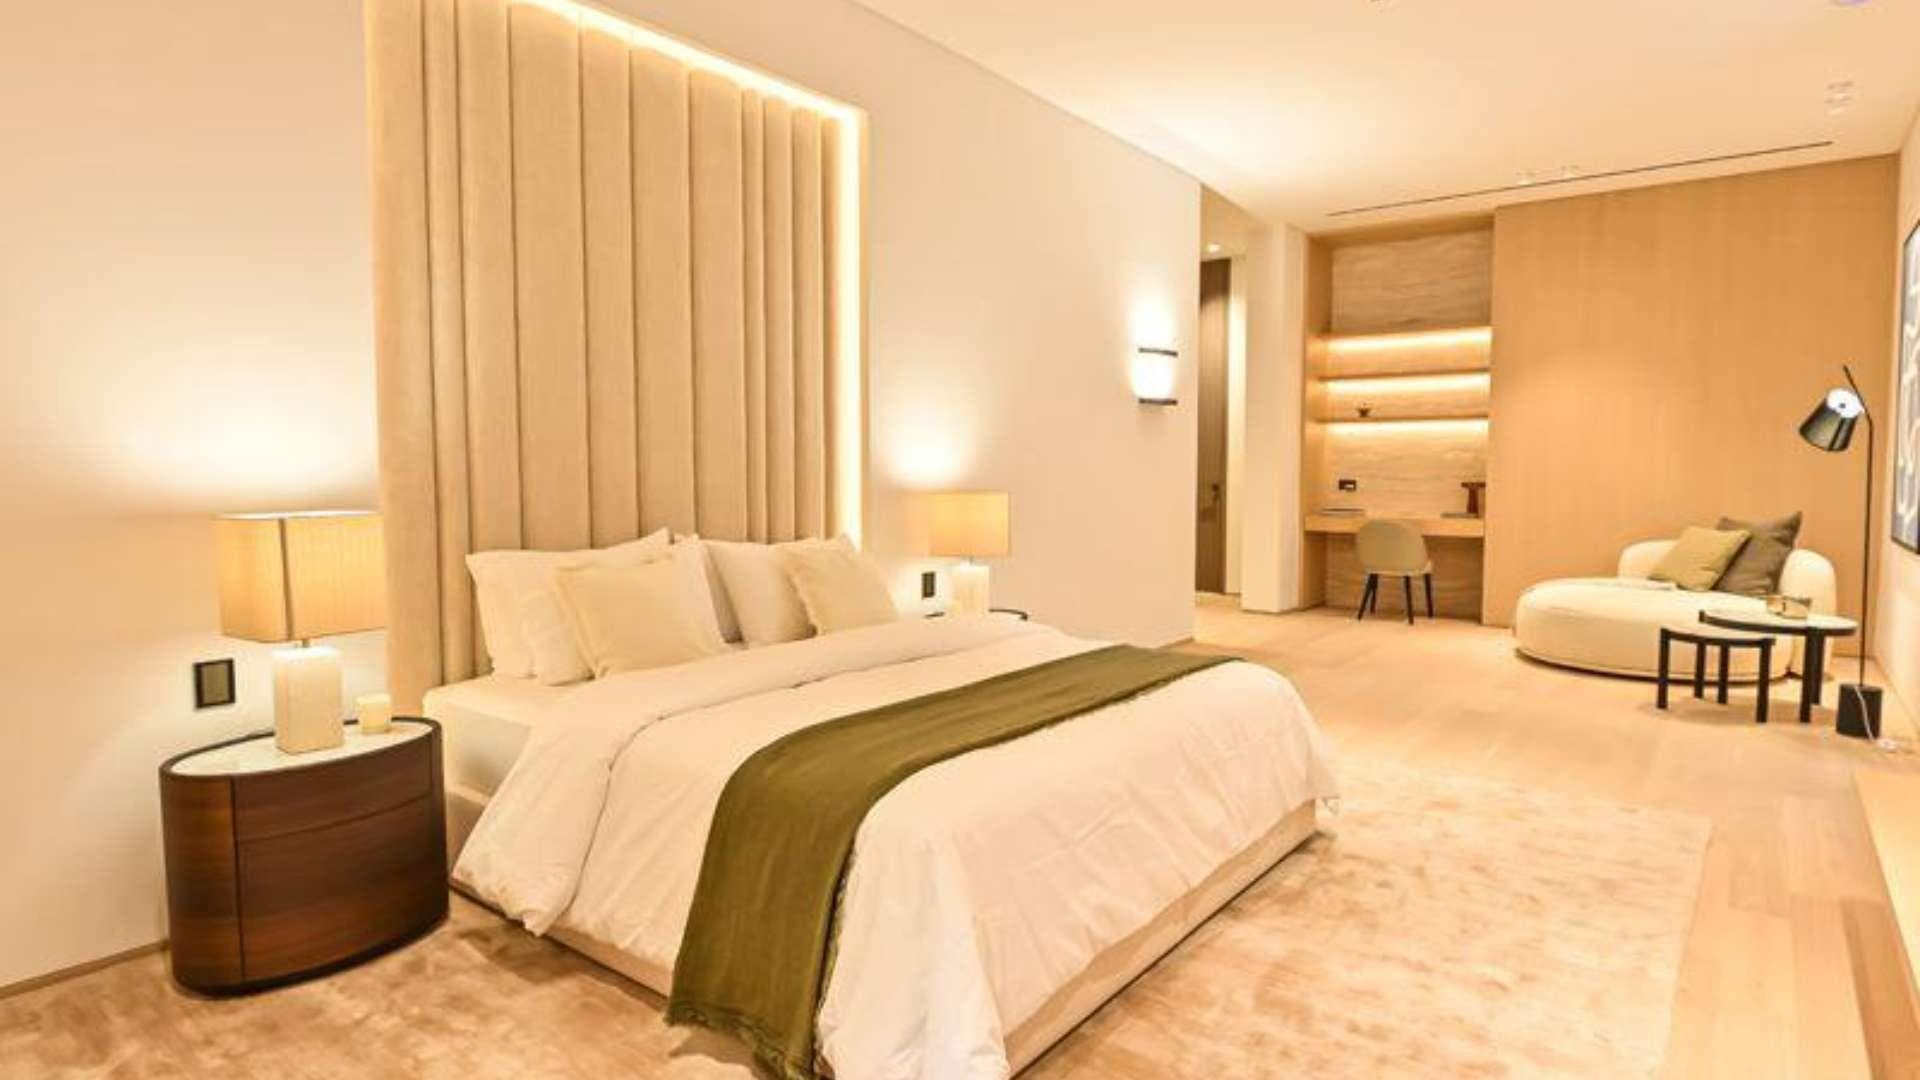 7 Bedroom Villa For Sale Dubai Hills Lp20693 16cf194af11e7000.jpg